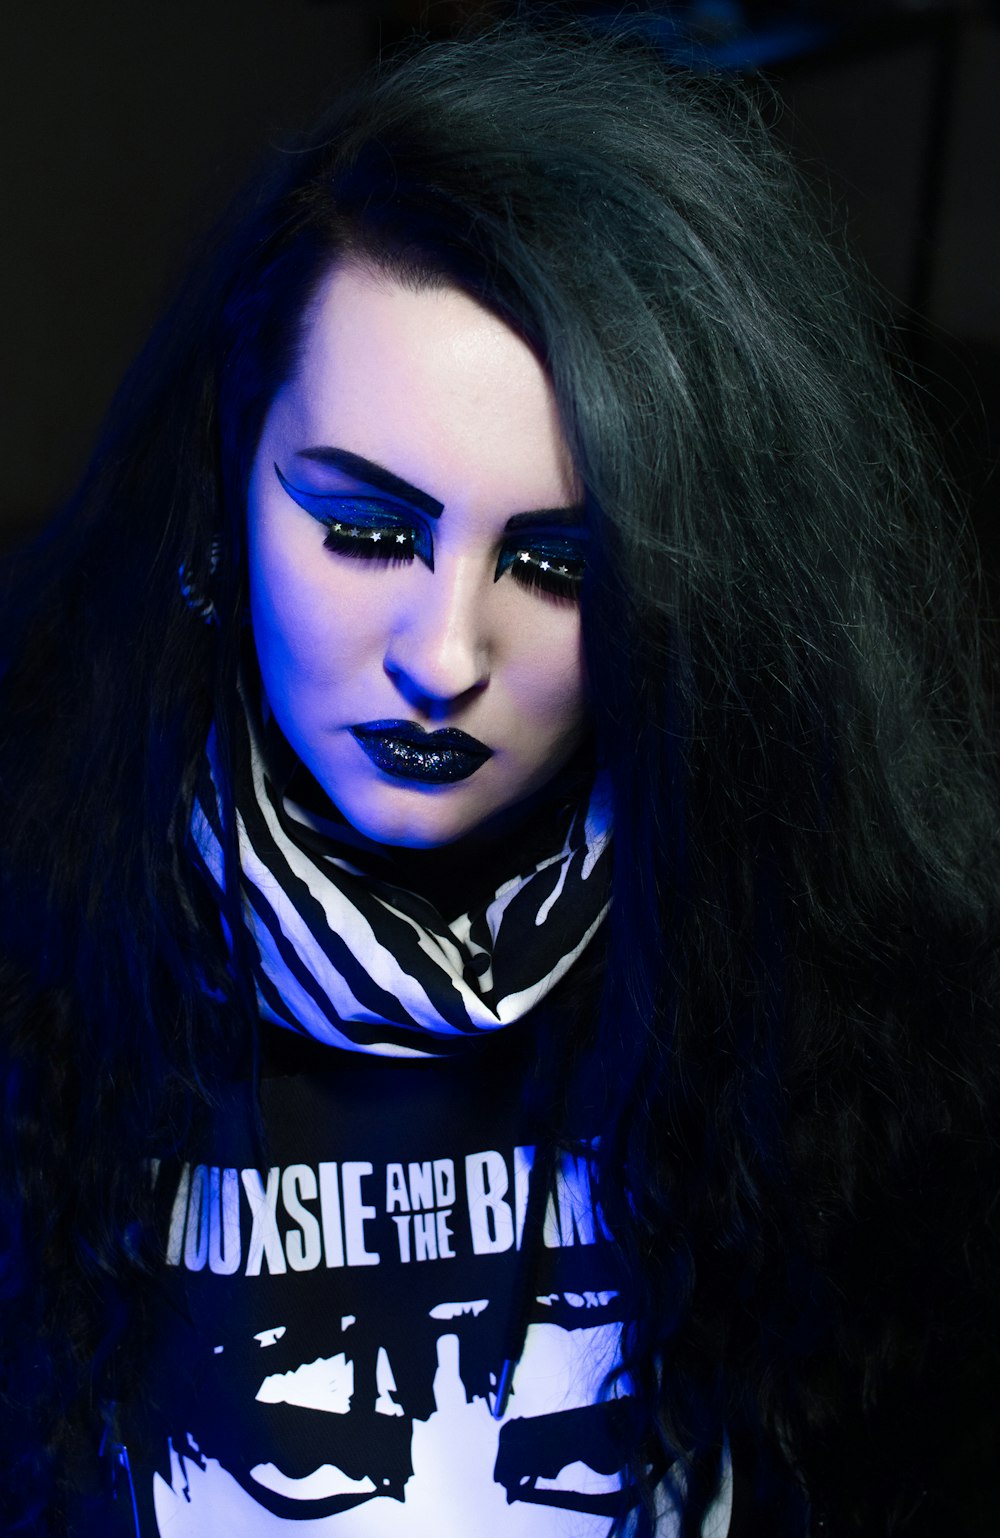 Eine Frau mit langen schwarzen Haaren und blauem Make-up